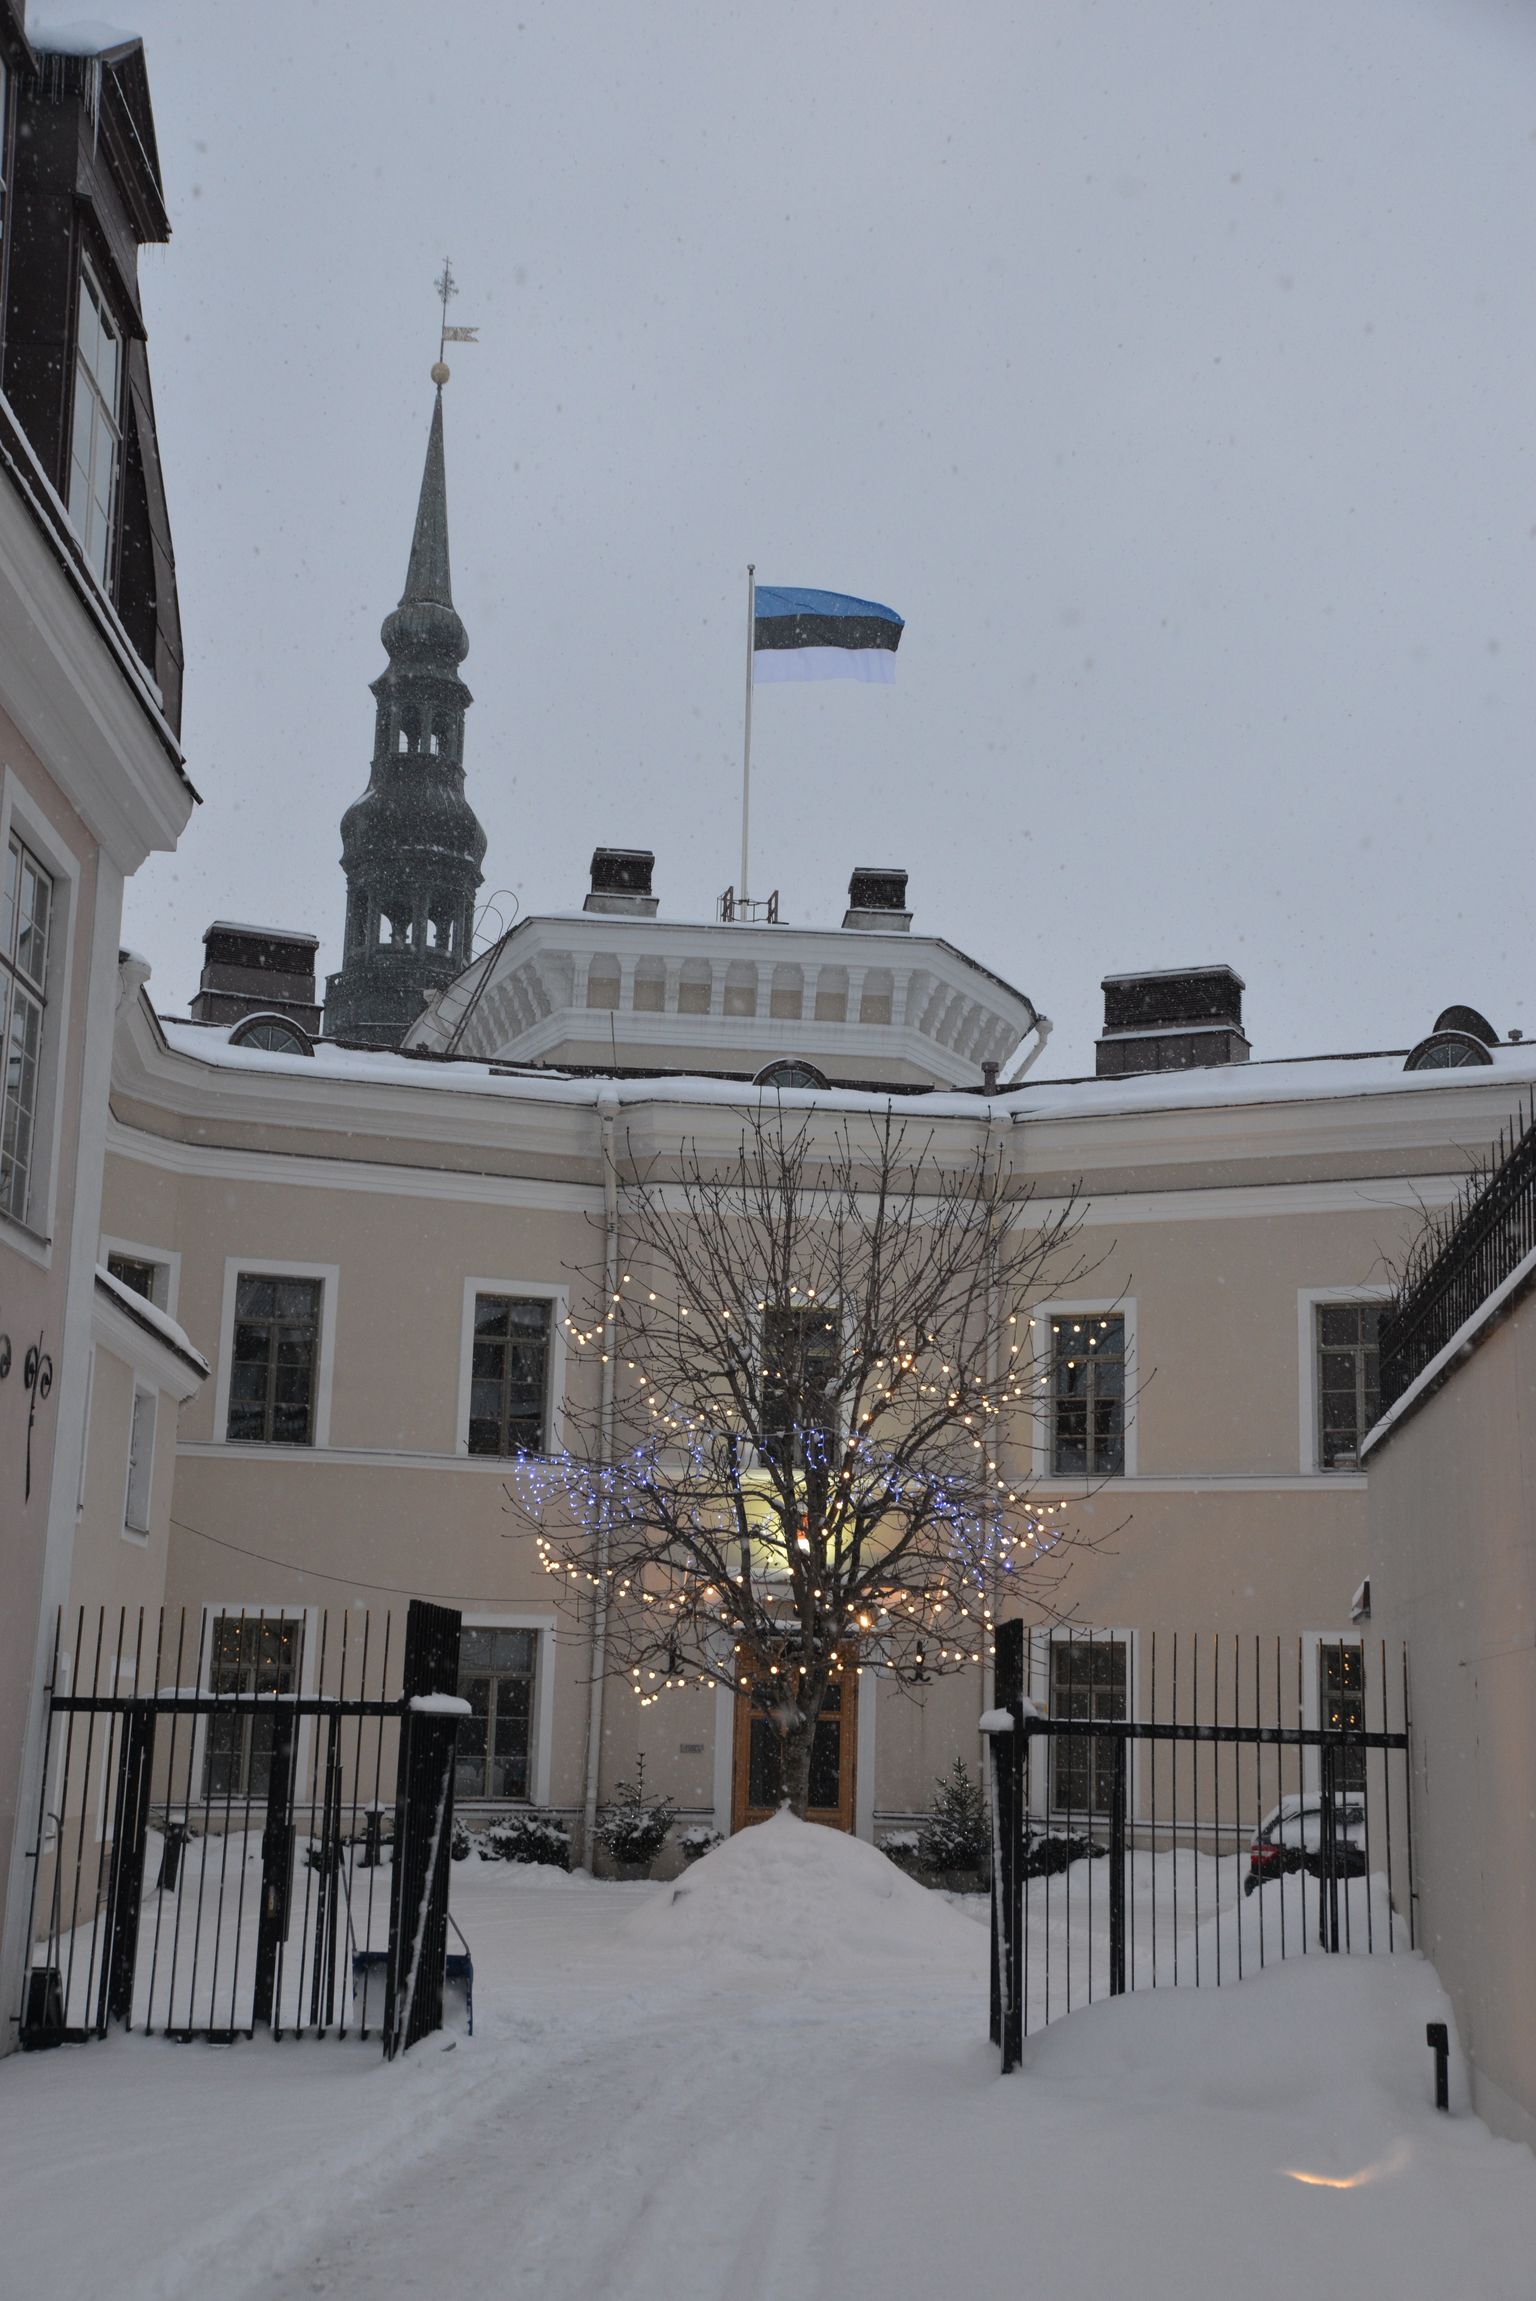 Haruldane päev _ Soome saatkonna lipumastis lehvib Eesti lipp.